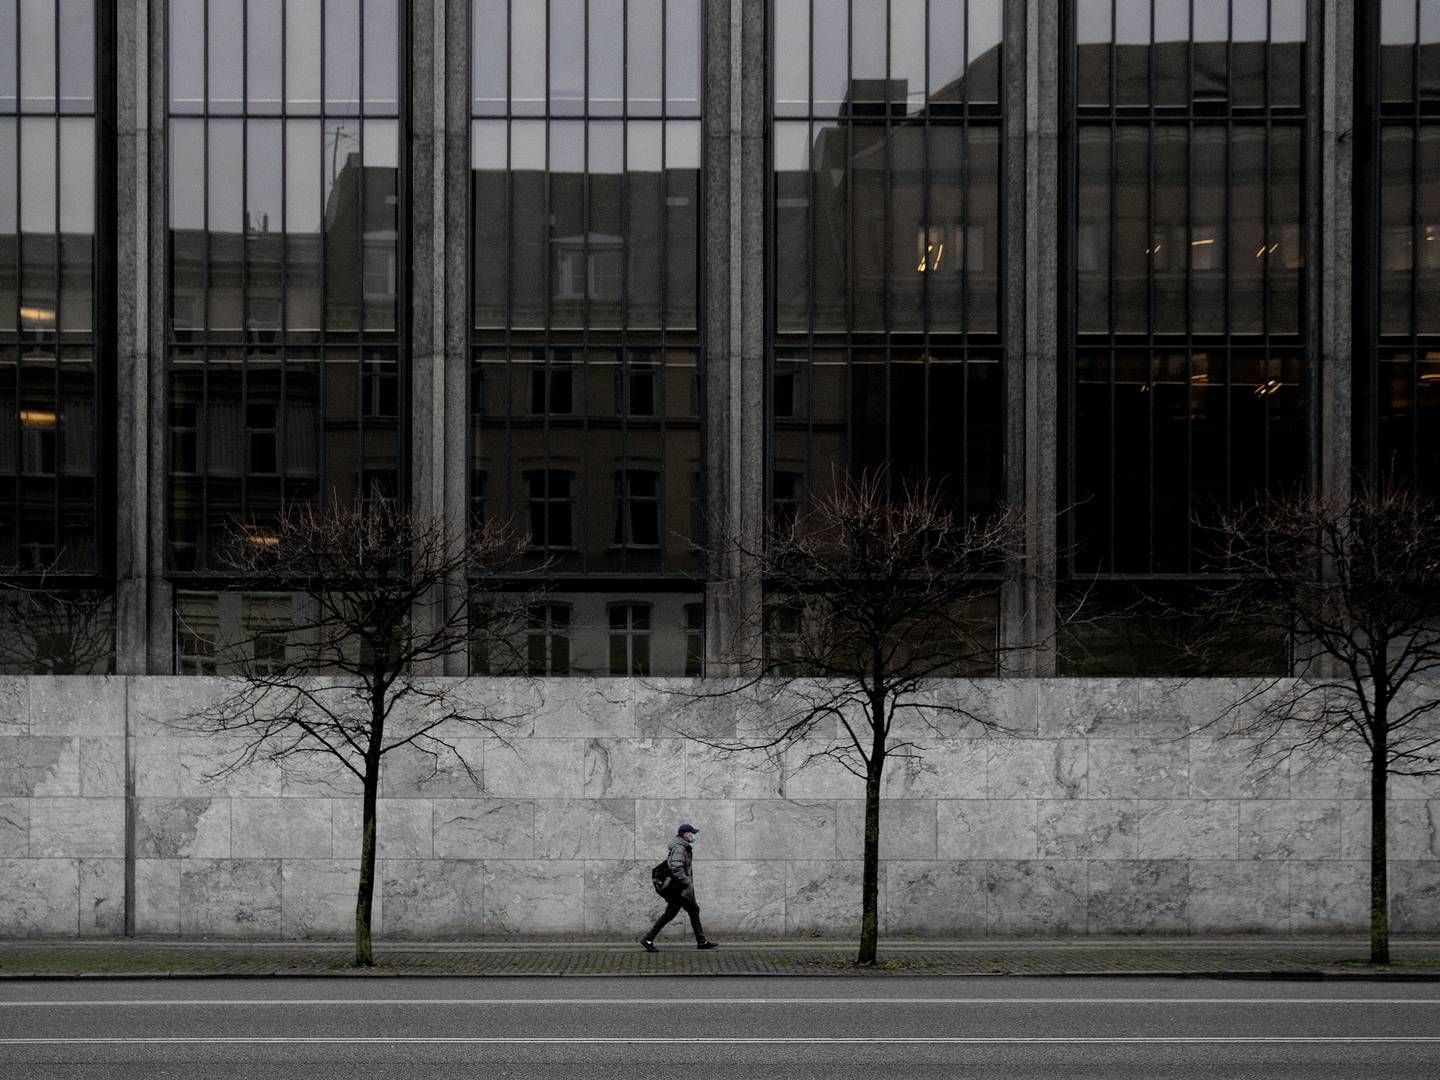 Nationalbankens bygning i det centrale København er tegnet af Arne Jacobsen og kendt for sin facade af mørkt glas og lysegrå beton. Bygningen blev fredet i 2009 | Foto: Peter Hove Olesen